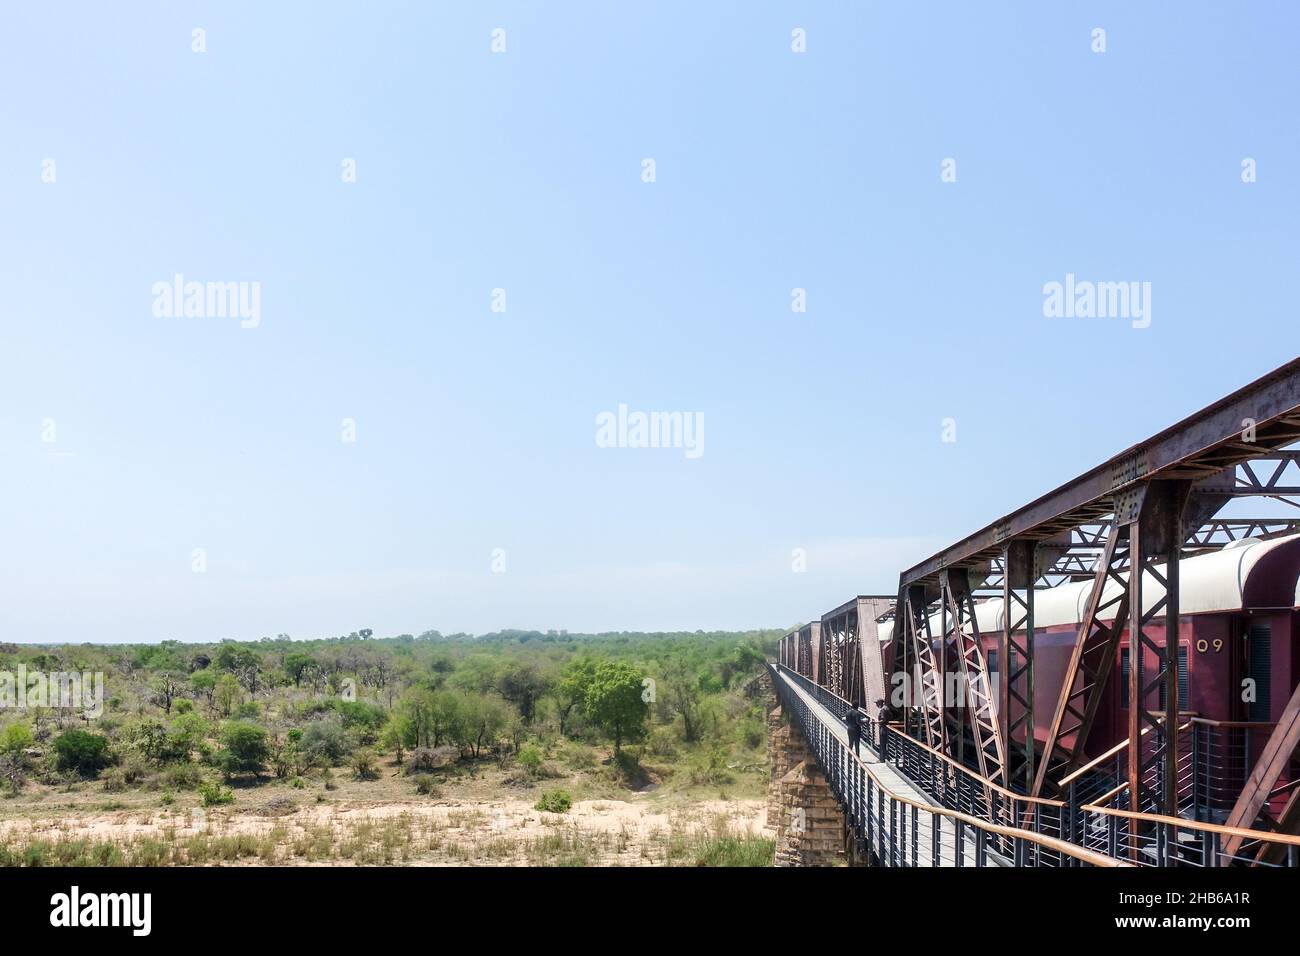 Alter Zug, der in eine Luxuslodge umgewandelt wurde, in Skukuza im Krüger National Park, Südafrika Stockfoto